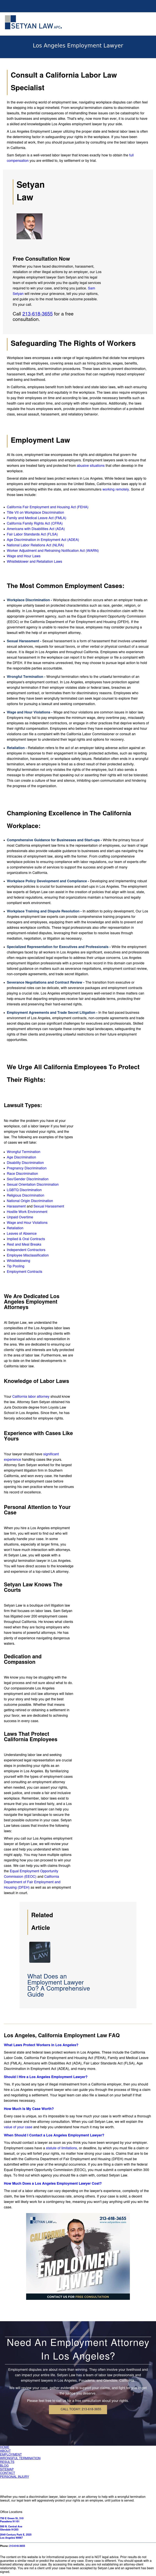 Employment Lawyers - Pasadena CA Lawyers